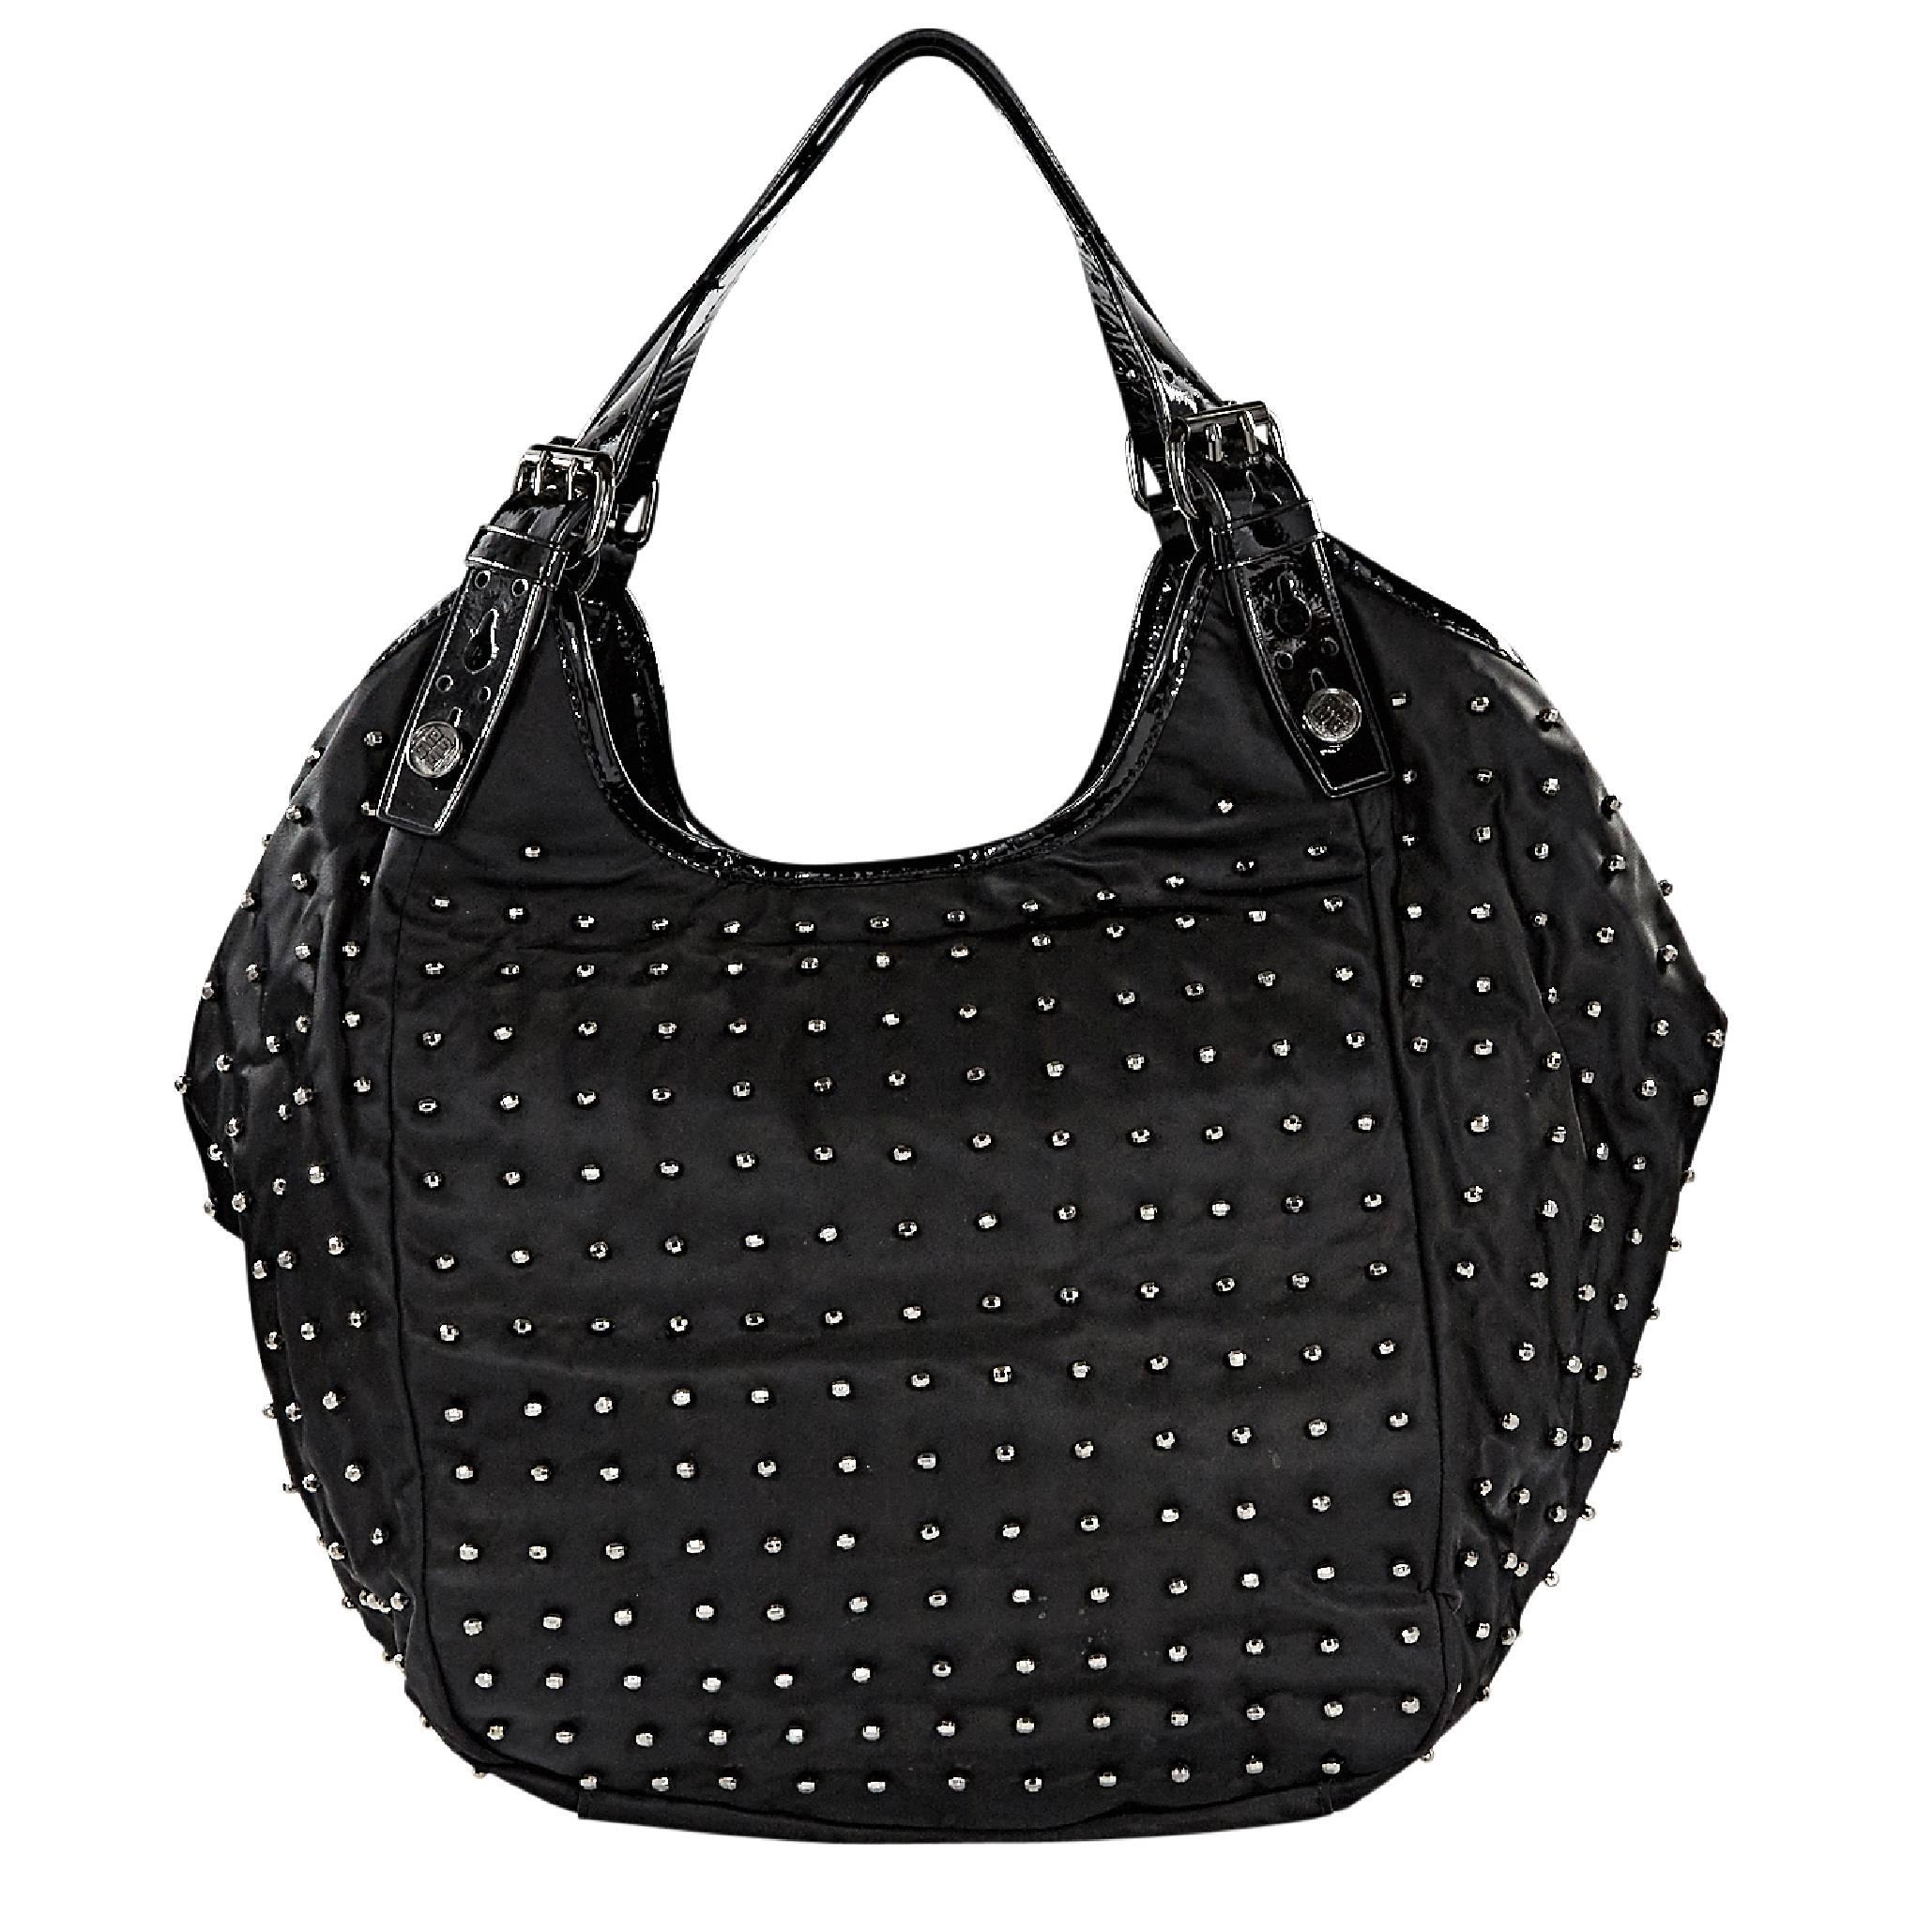 Givenchy Black Nylon Beaded 'New Sacca' Hobo Bag 